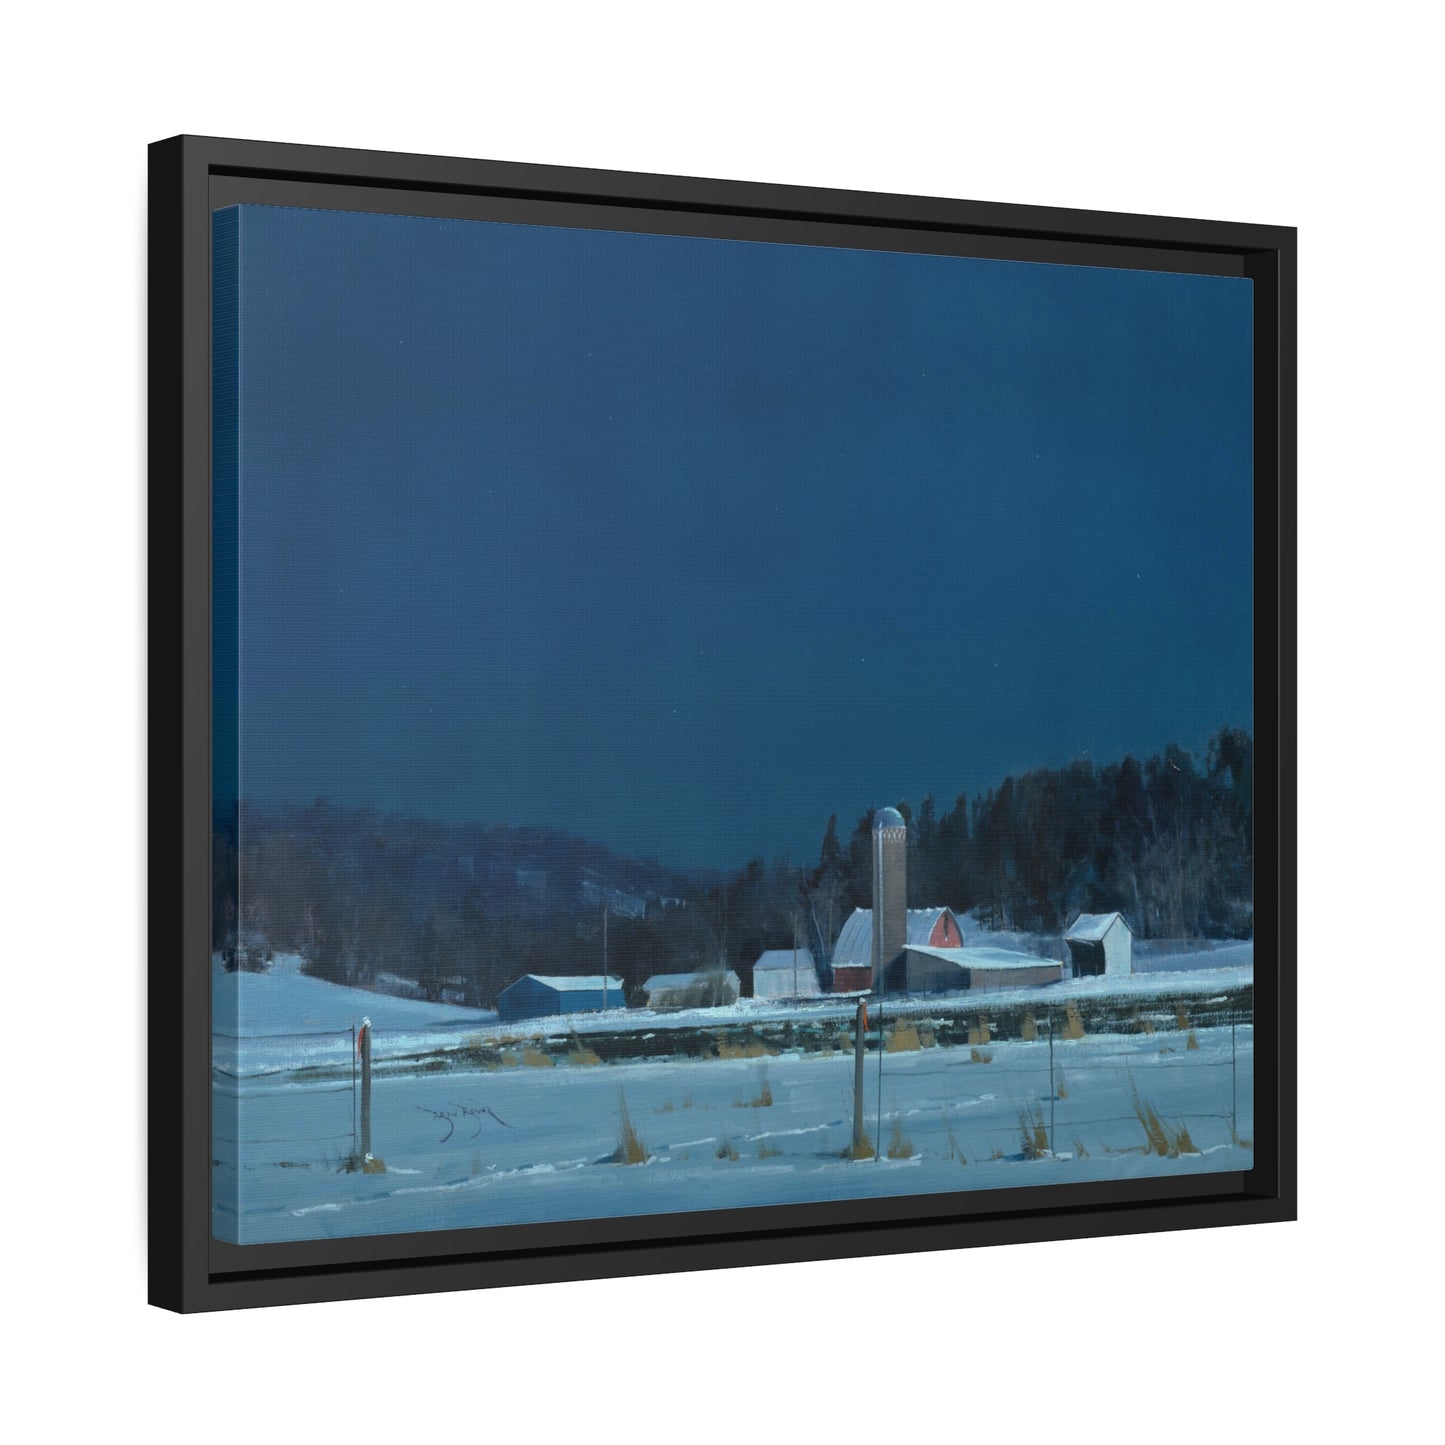 Ben Bauer: "Drifting Moonlight" - Framed Canvas Reproduction